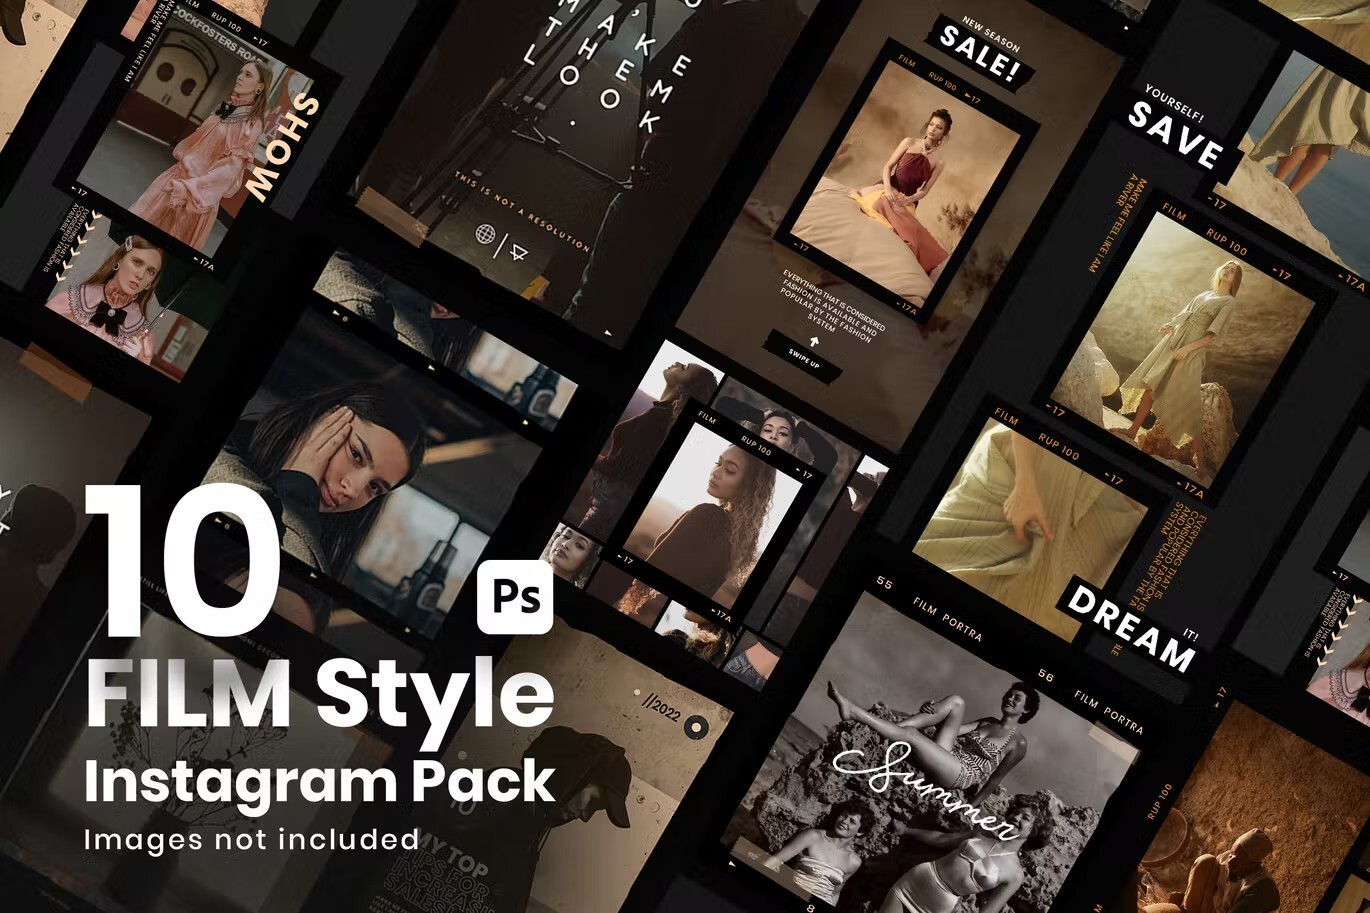 10个复古INS电影胶片风格竖屏自媒体PSD样机模板 10 Film Style Instagram pack 样机素材 第1张